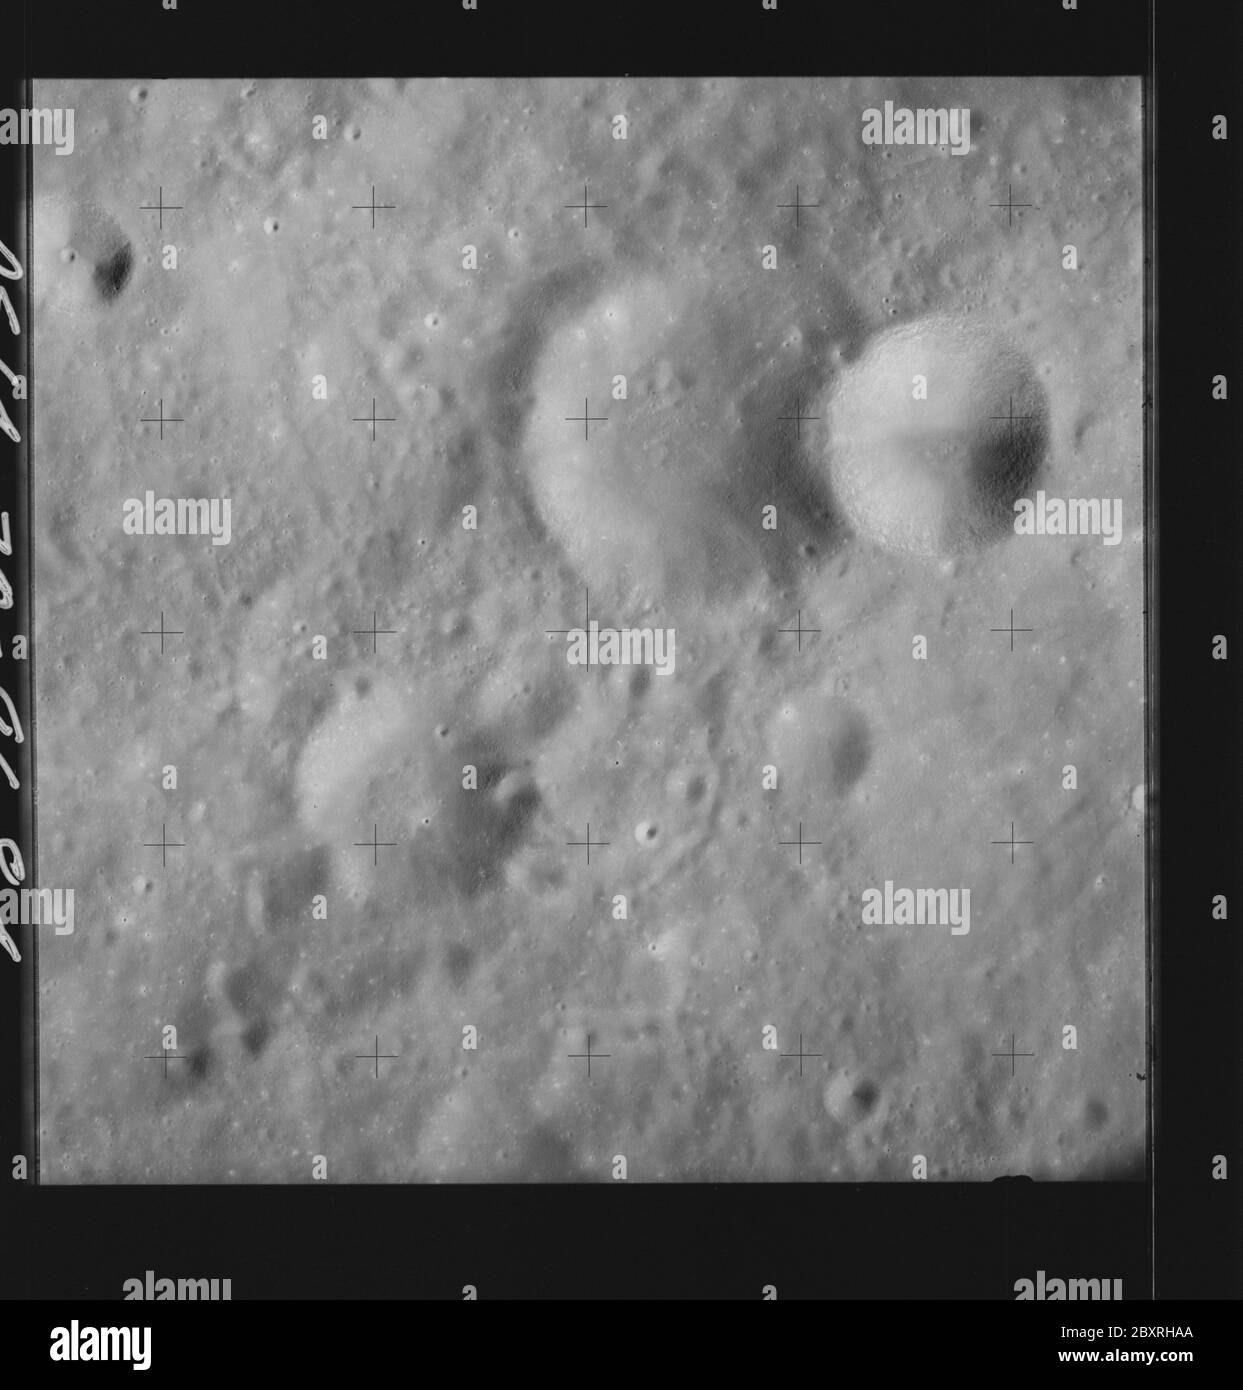 AS14-70-9684 - Apollo 14 - Apollo 14 image de la mission - vue de la surface lunaire au sud-est du cratère d'Einthoven.; portée et contenu: La base de données originale décrit ce qui suit: Description: Vue de la surface lunaire au sud-est du cratère d'Einthoven. Des images ont été prises sur la Révolution 26 de la mission Apollo 14. Le magazine original a été étiqueté Q, le type de film était 3400BW (Panatomic-X, noir et blanc), objectif de 80 mm avec une élévation du soleil de 28 degrés. L'échelle de photo approximative était de 1:1,380,000. La latence du point principal était de 7,5S par Longitude 111.5E, avec une inclinaison verticale de la caméra. Descripteurs : Apollo 14 en bateau Banque D'Images